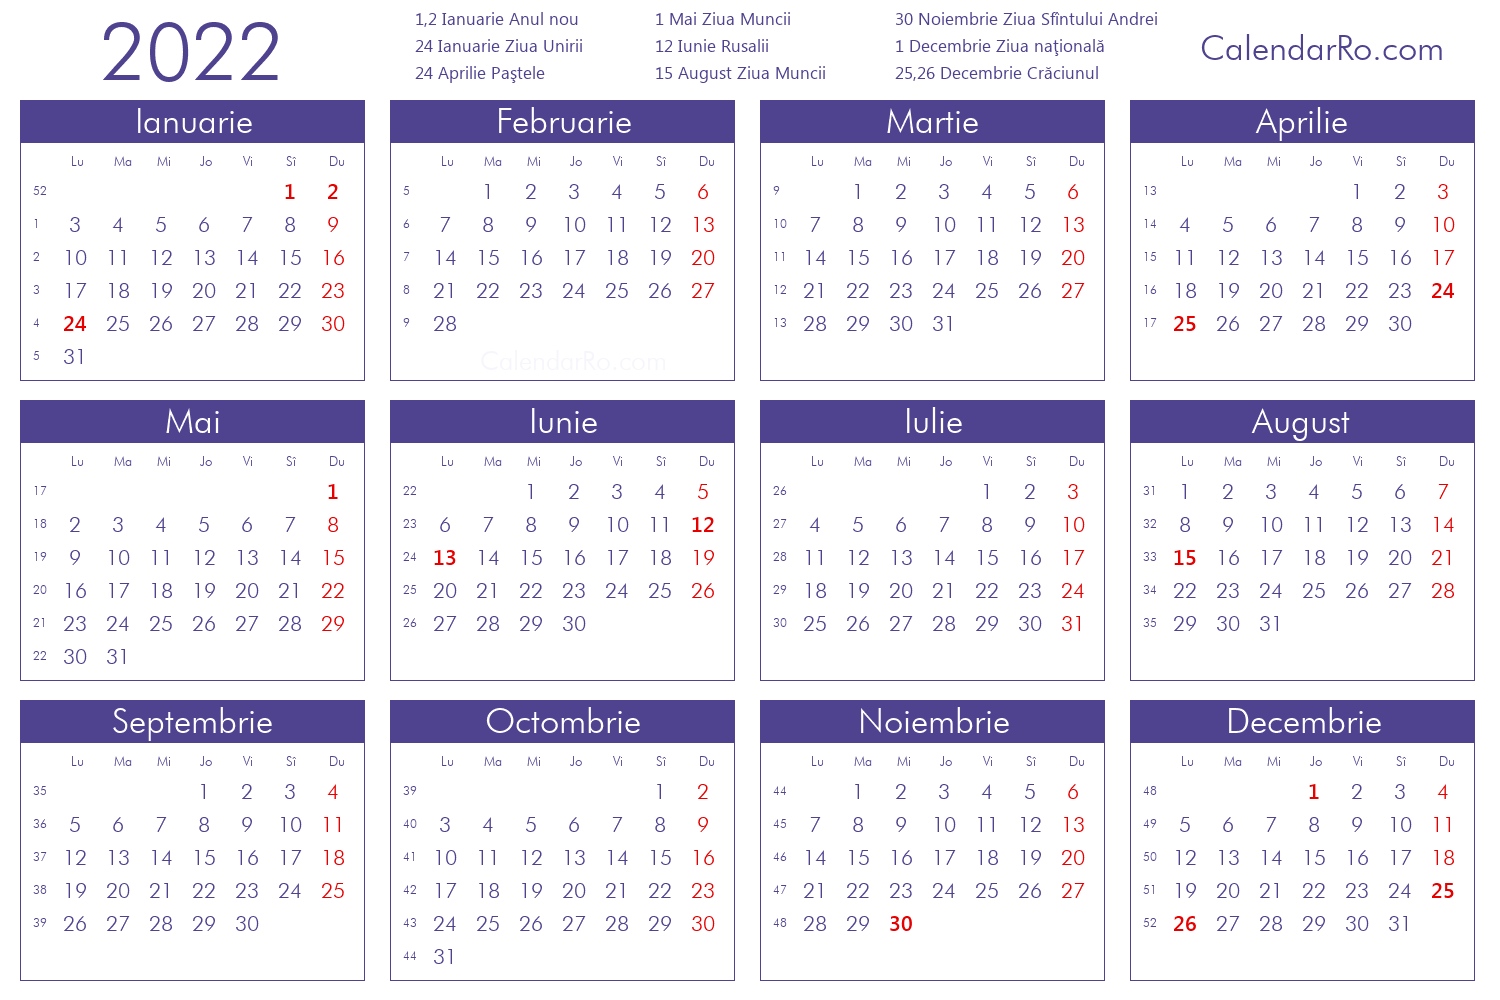 Calendar Românesc 2022  Latest News Update in Calendar Zile Lucratoare 2022